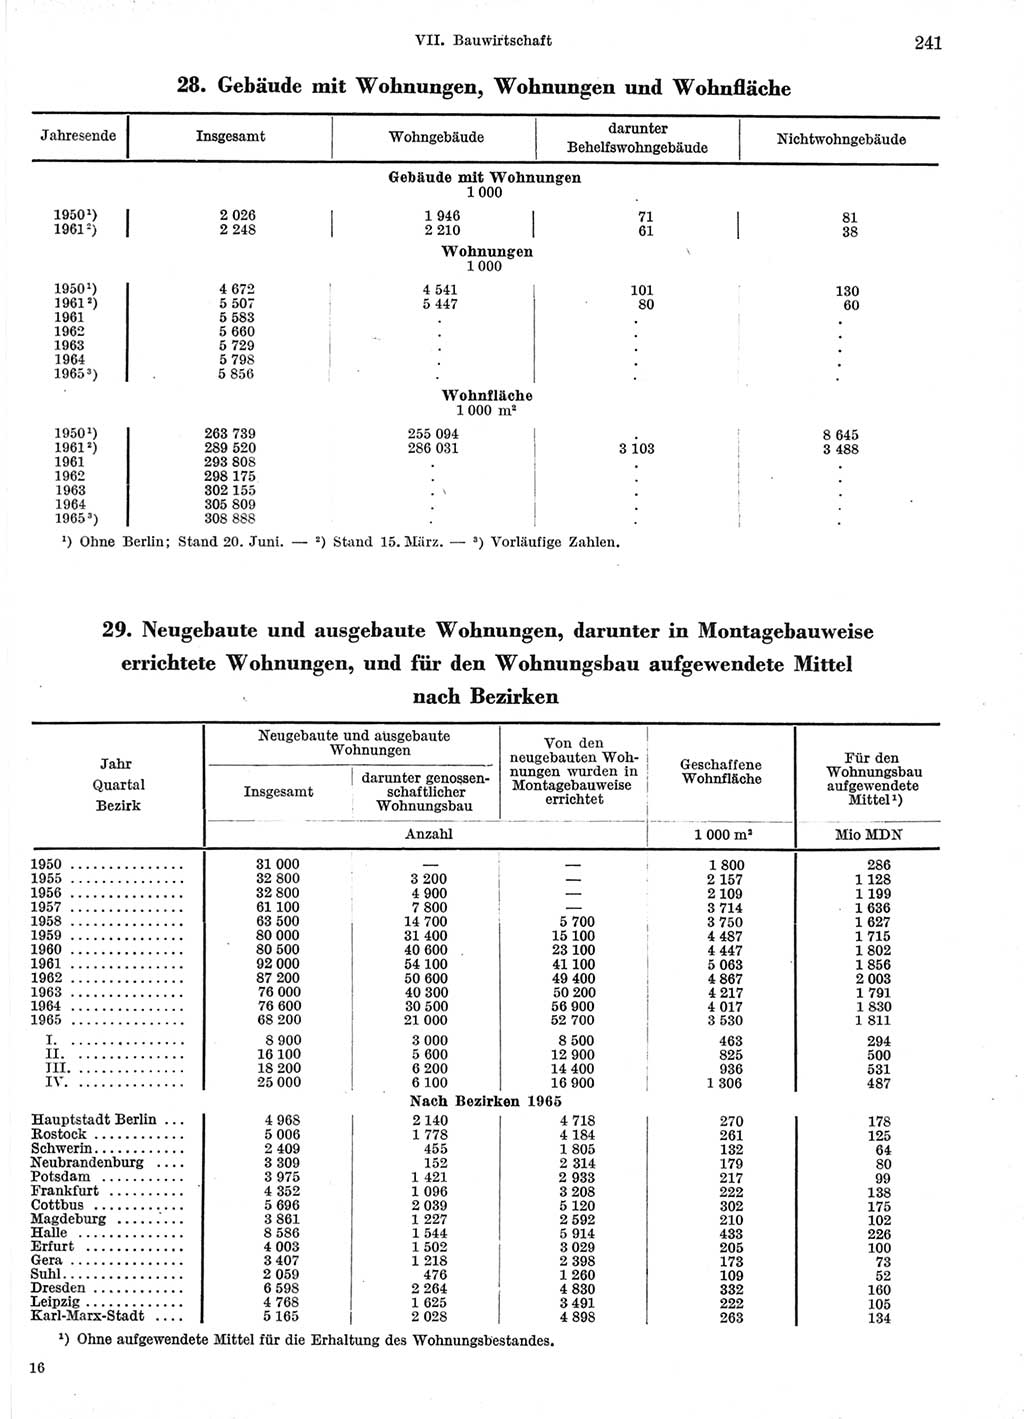 Statistisches Jahrbuch der Deutschen Demokratischen Republik (DDR) 1966, Seite 241 (Stat. Jb. DDR 1966, S. 241)